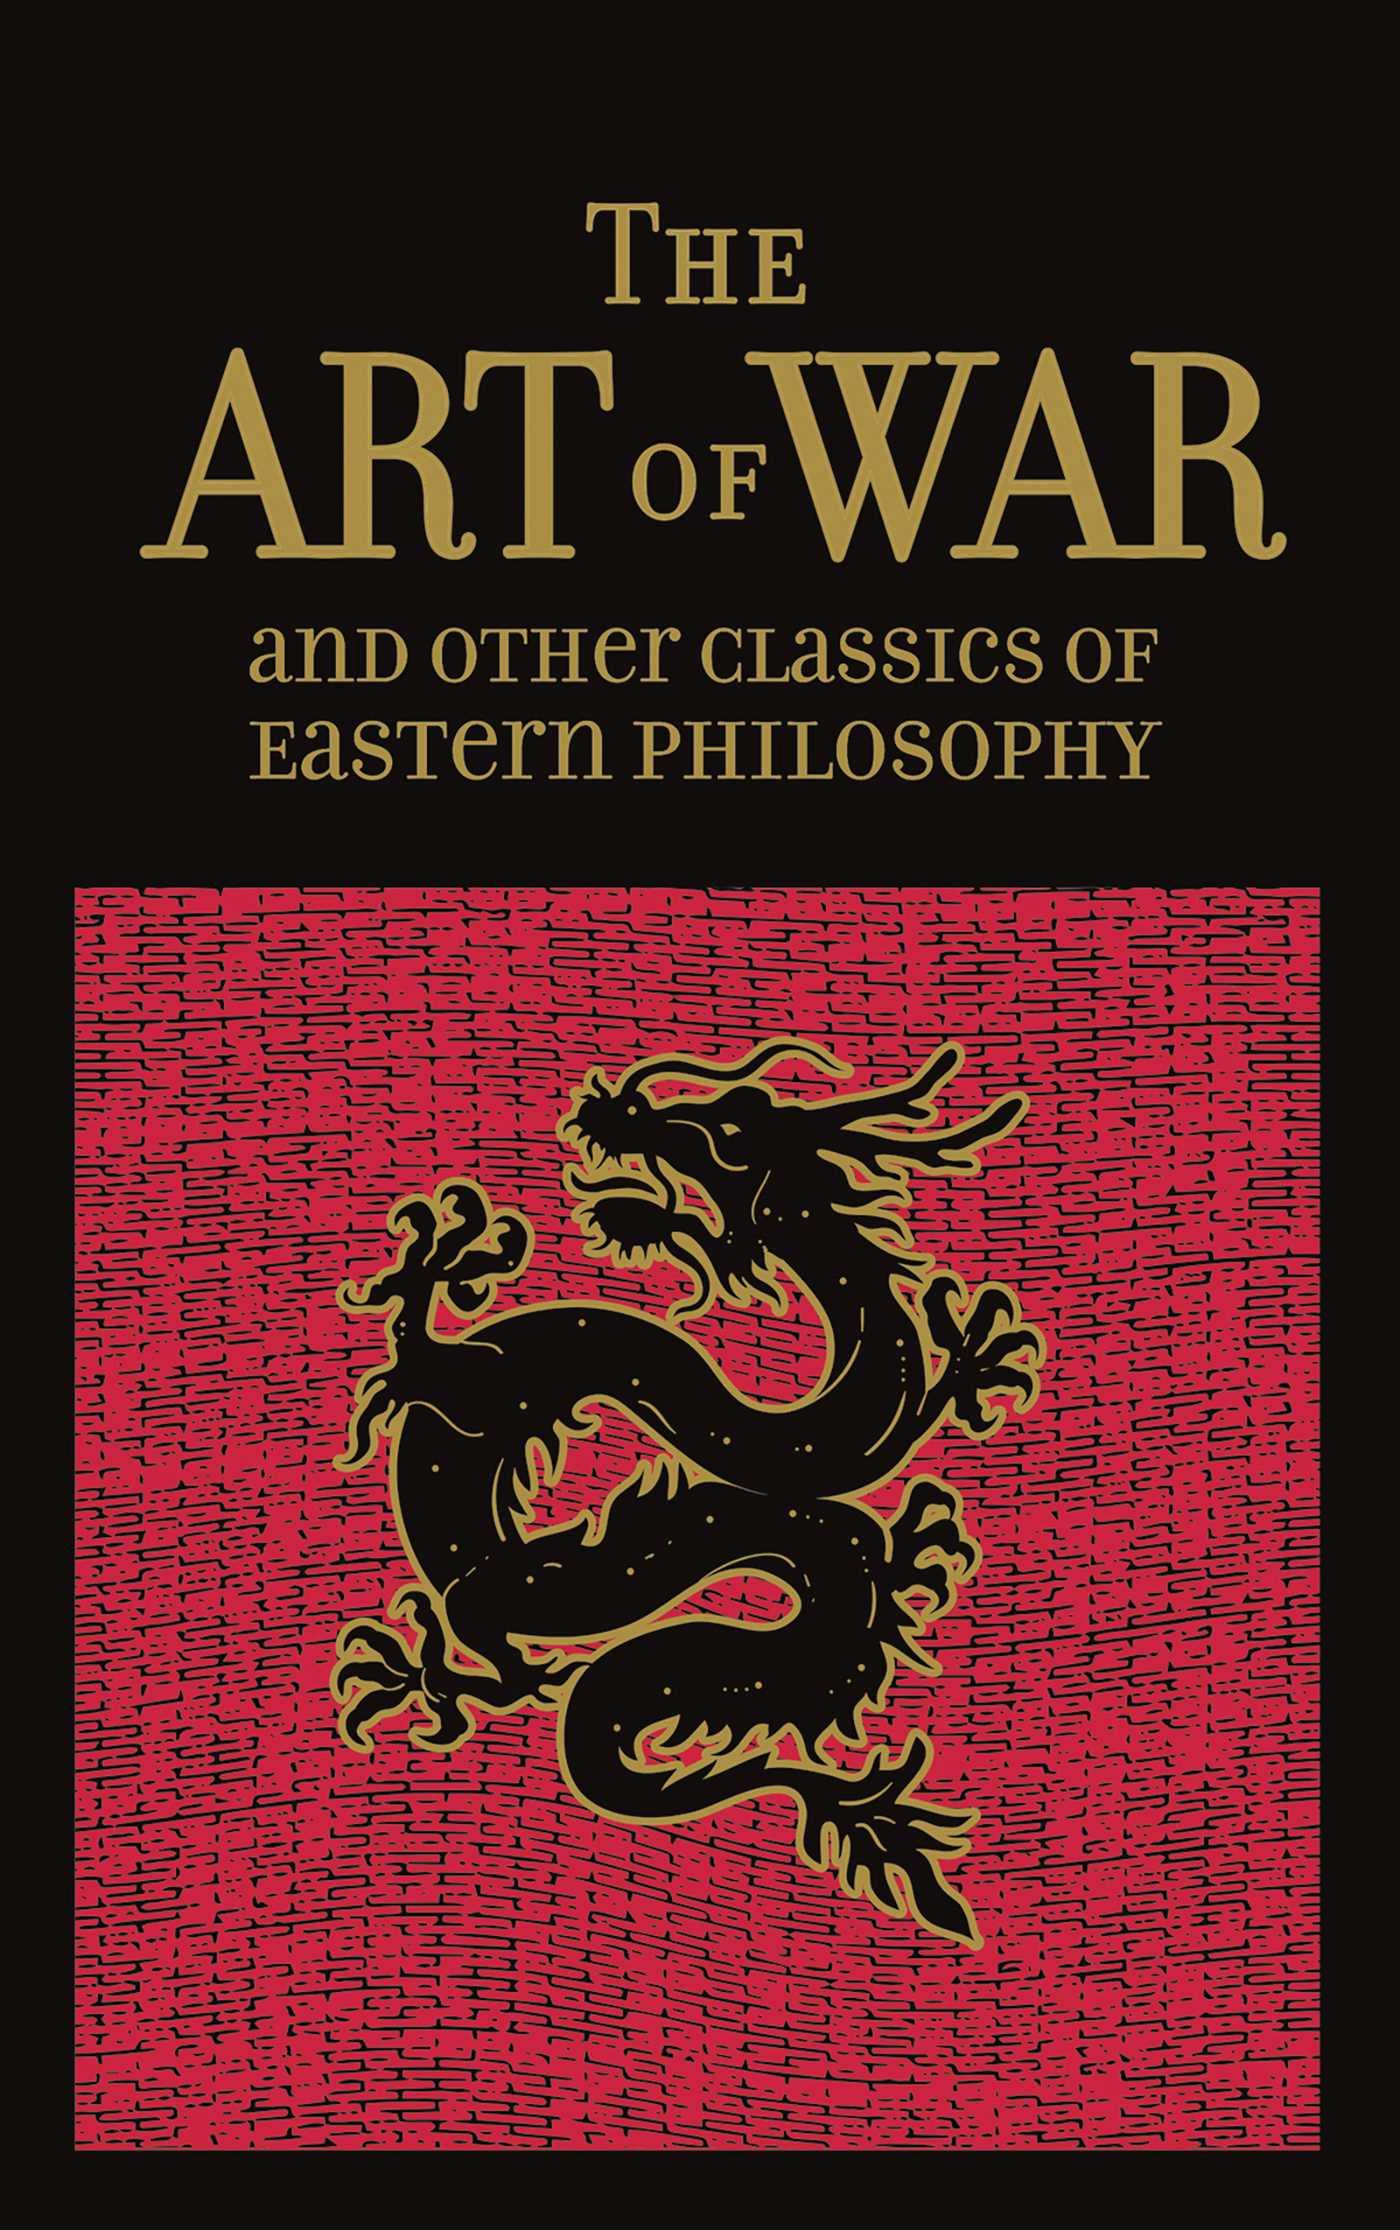 The Art of War & Other Classics of Eastern Philosophy - Sun Tzu, Mencius Mencius, Lao-Tzu Lao-Tzu, Confucius Confucius